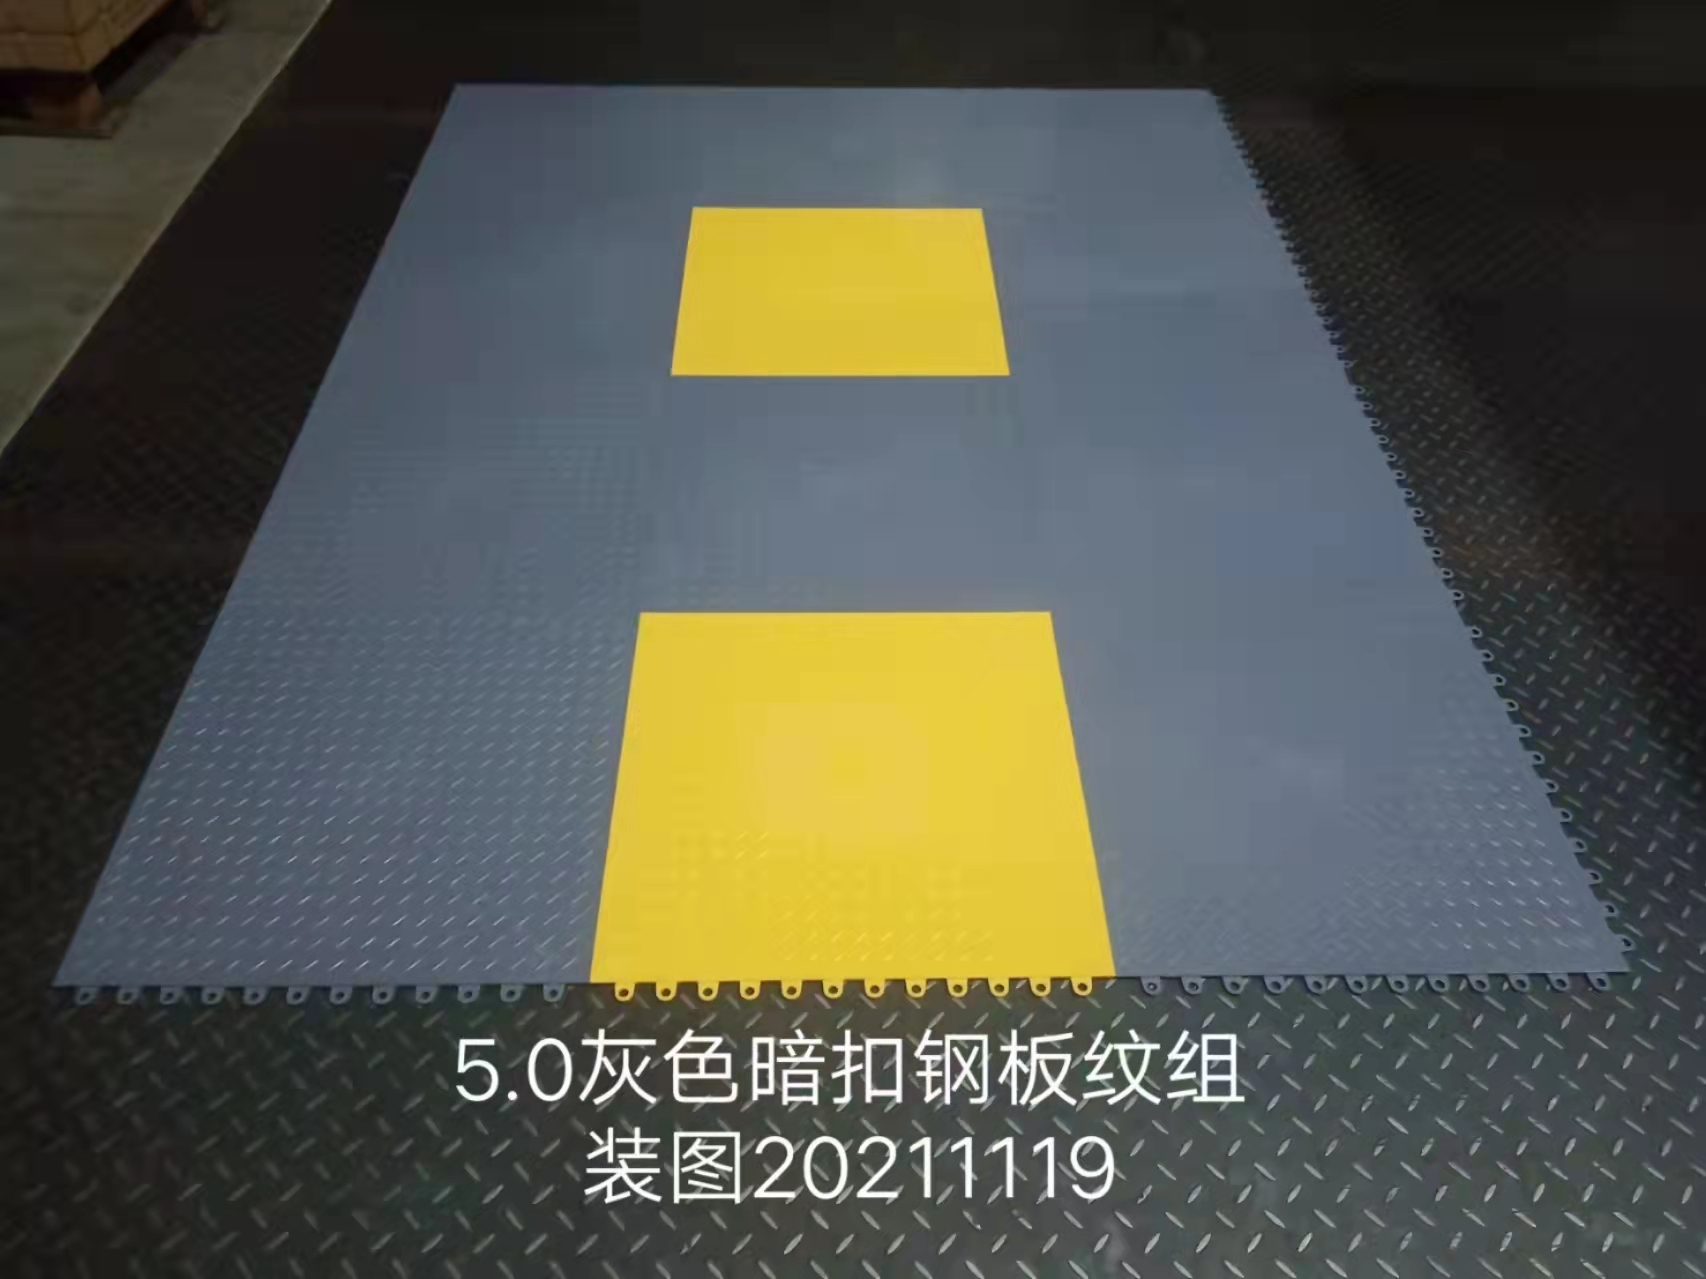 惠州5.0灰色皮纹地板定制、批发报价、销售公司【东莞市顺泰塑胶制品有限公司】